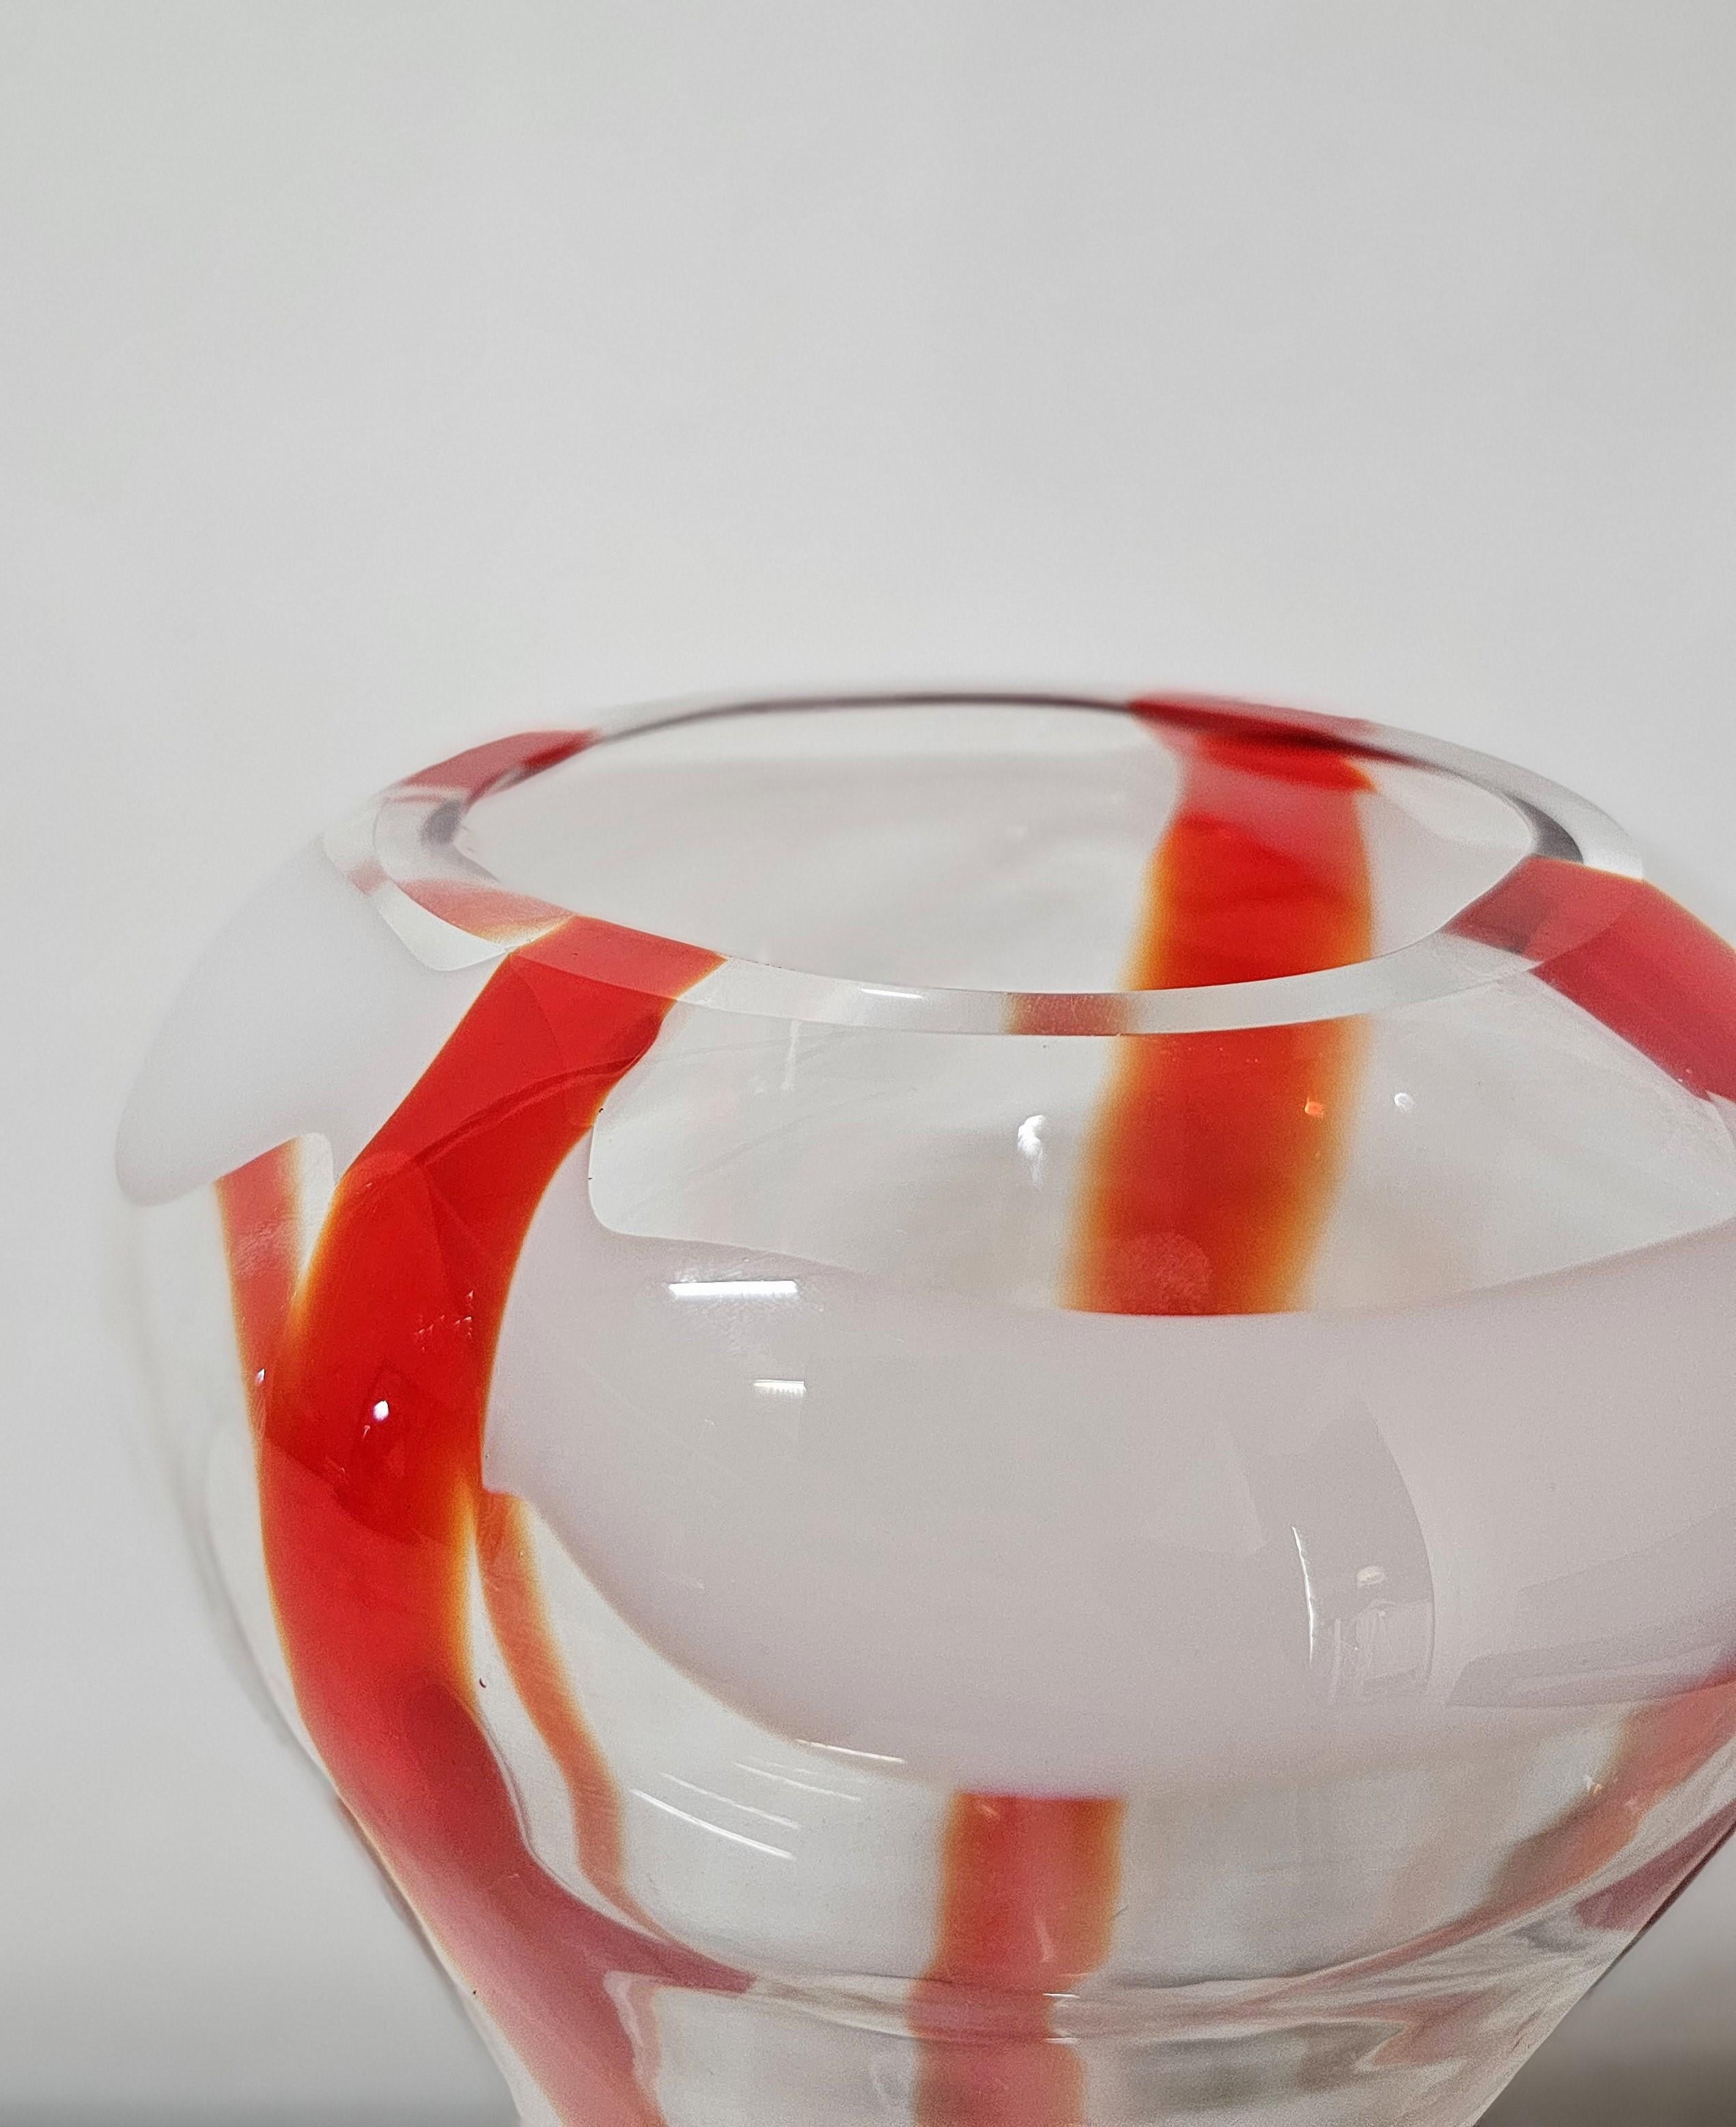 Decorative Object Vase Guzzini Murano Glass Midcentury Italian Design 1970s For Sale 1